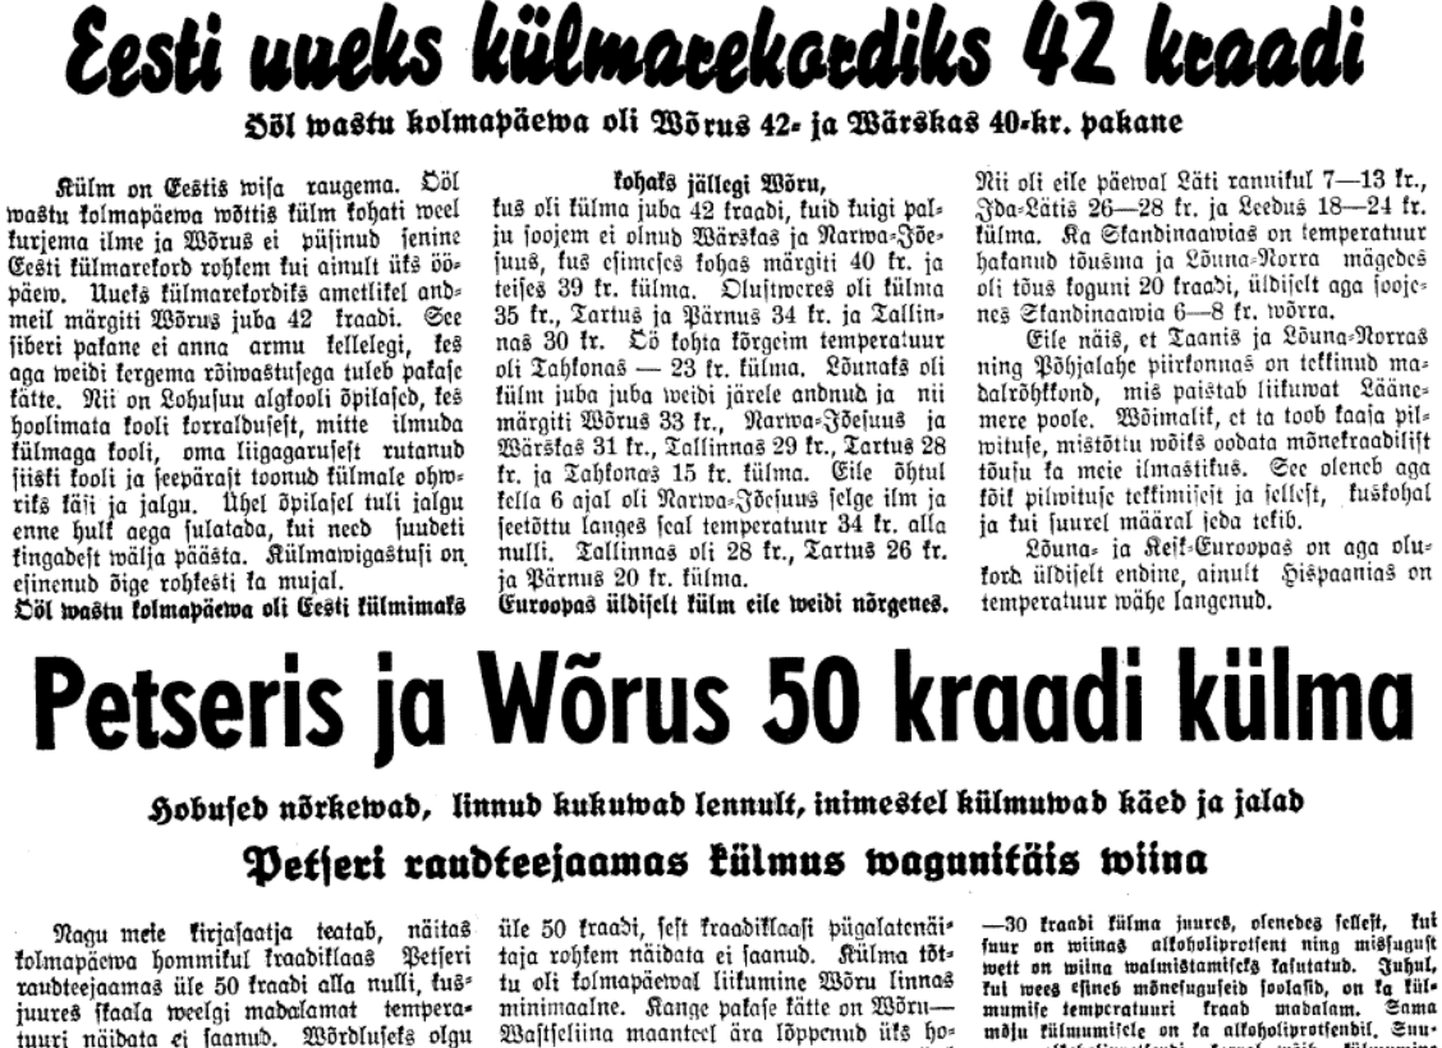 Uudised kangest külmast 18. jaanuaril 1940 ilmunud Postimehes.